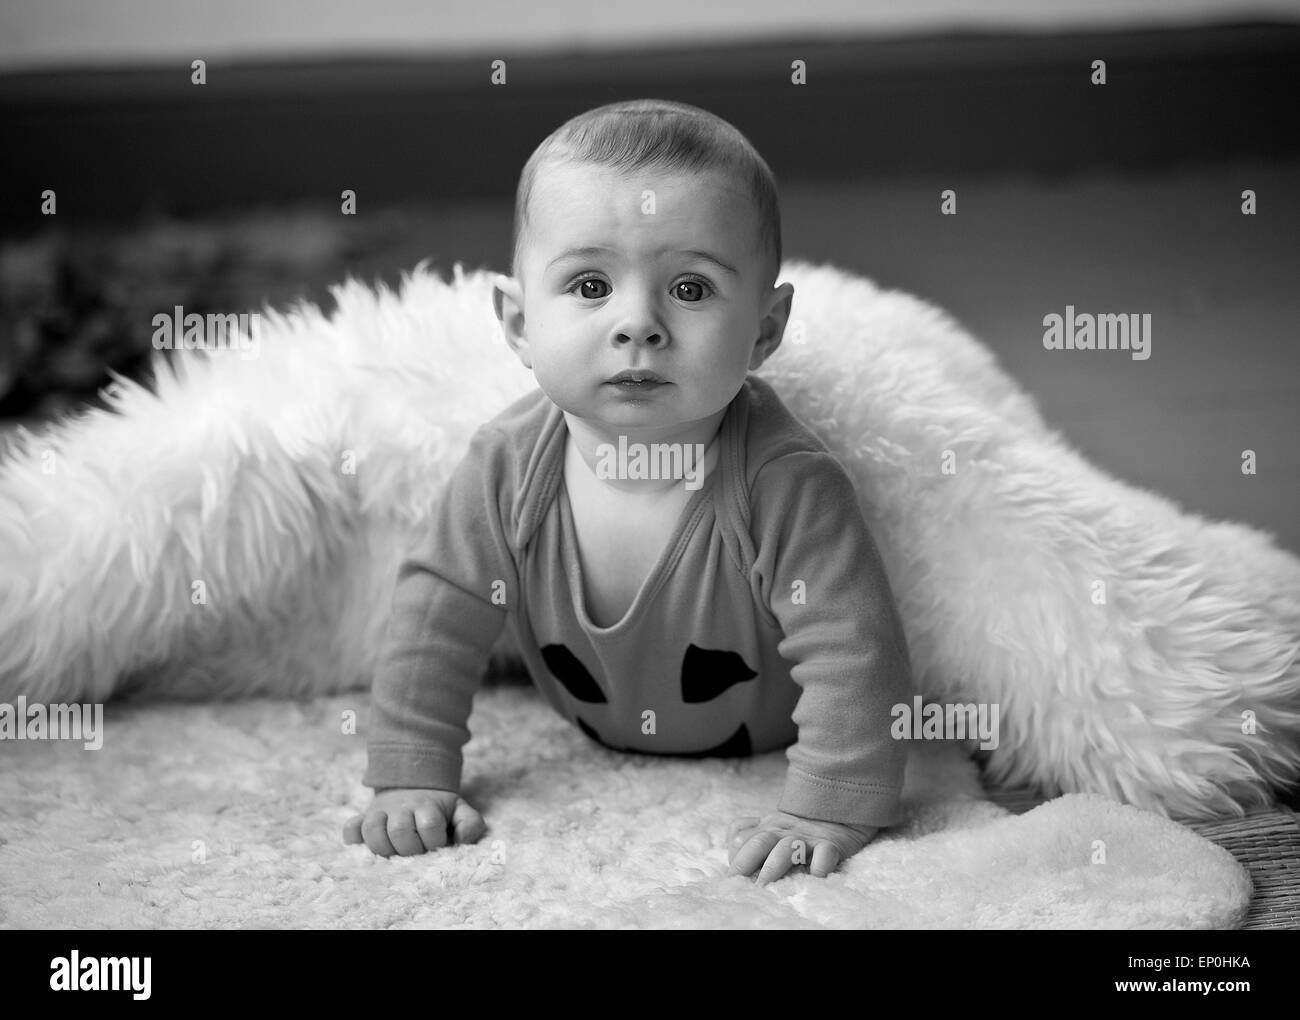 Baby boy in bianco e nero alla ricerca di curiosi in coperta Foto Stock